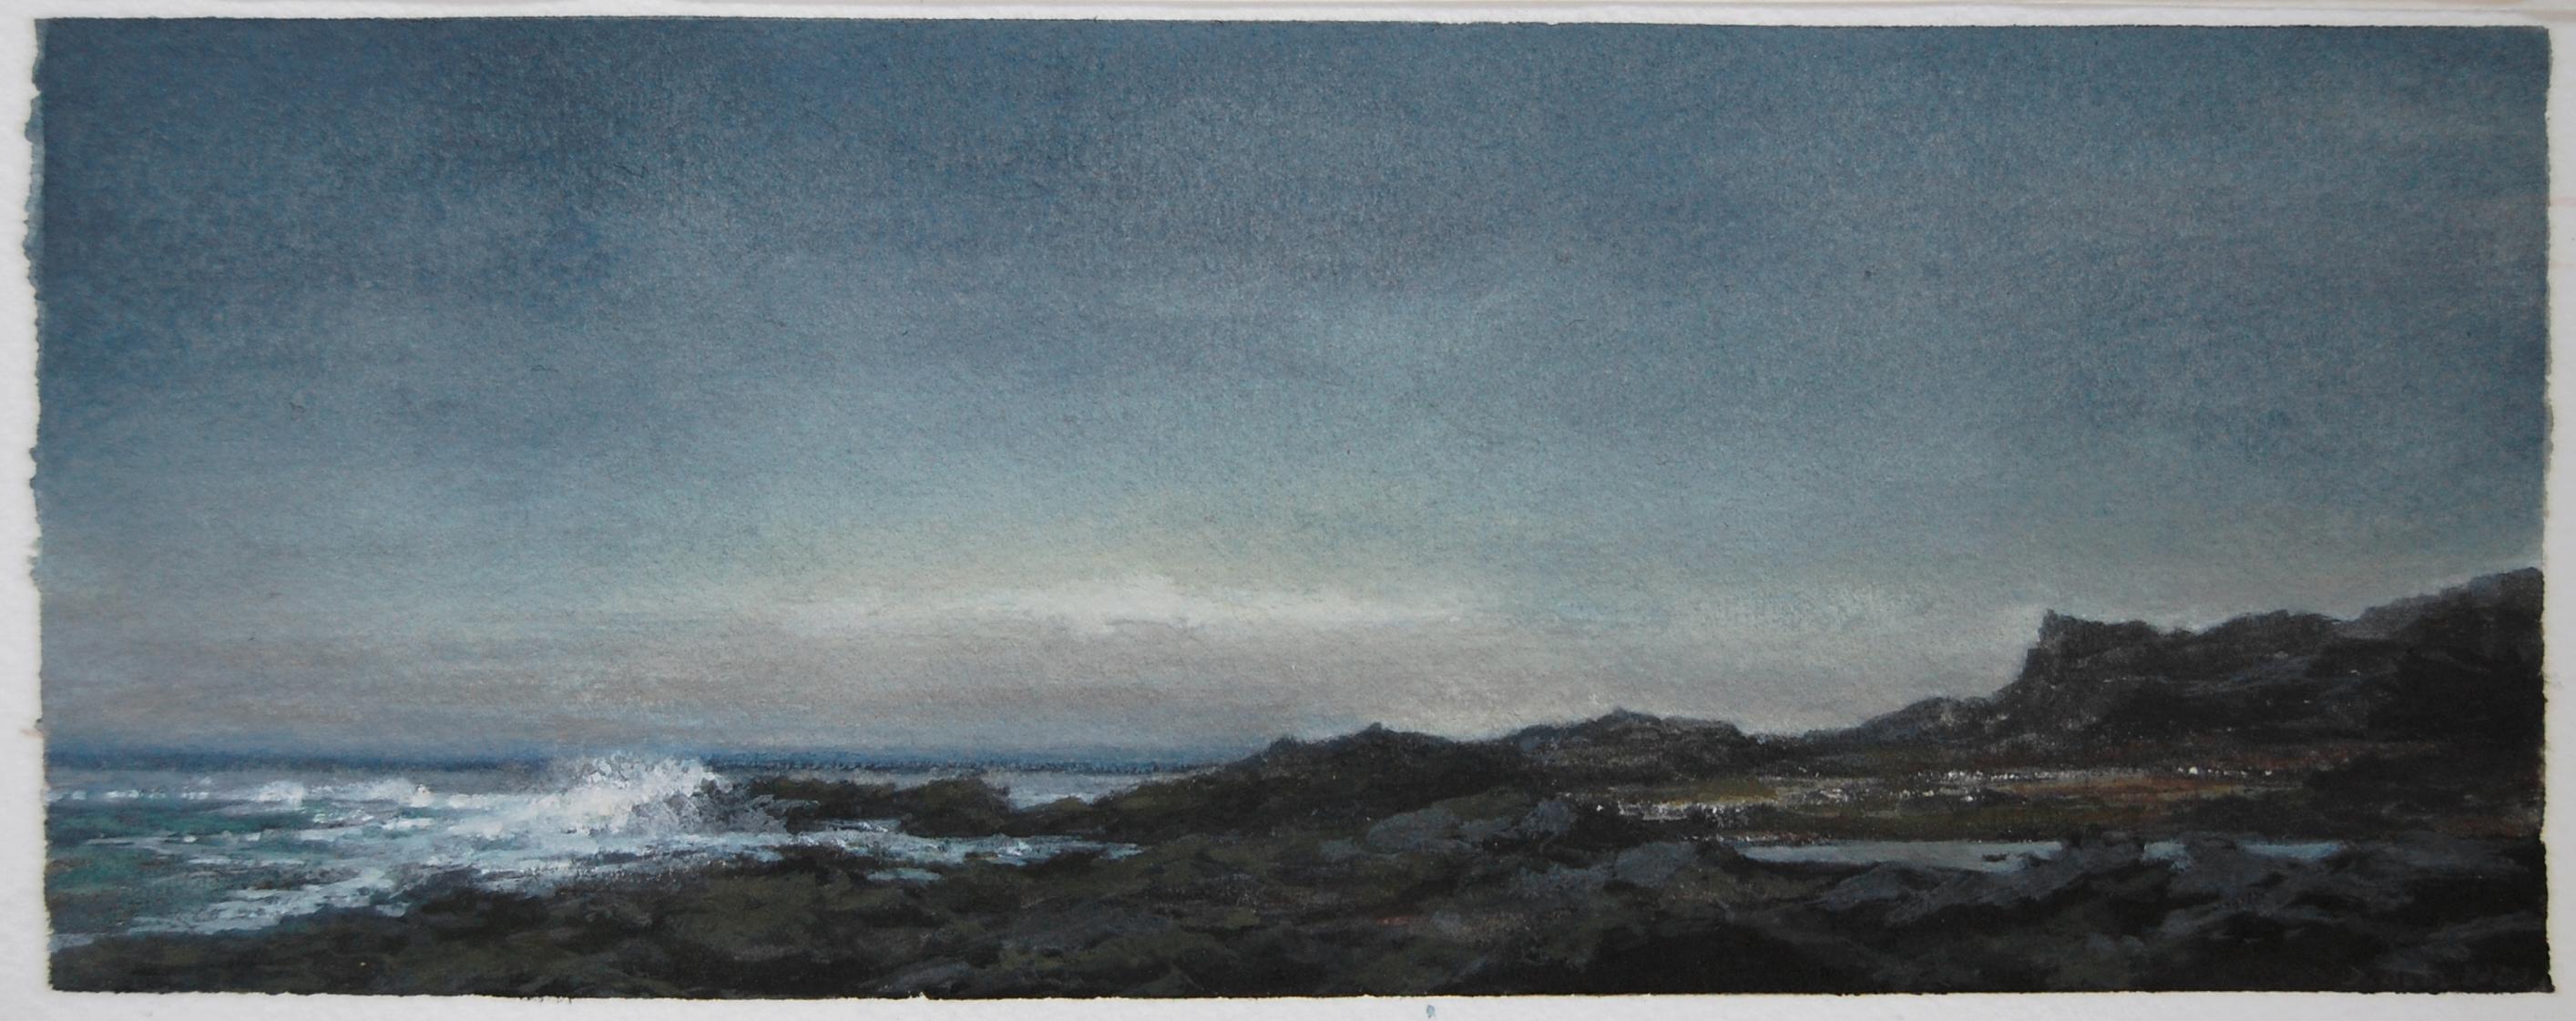 SHORE, vers le crépuscule, paysage marin du nord-est, aquarelle